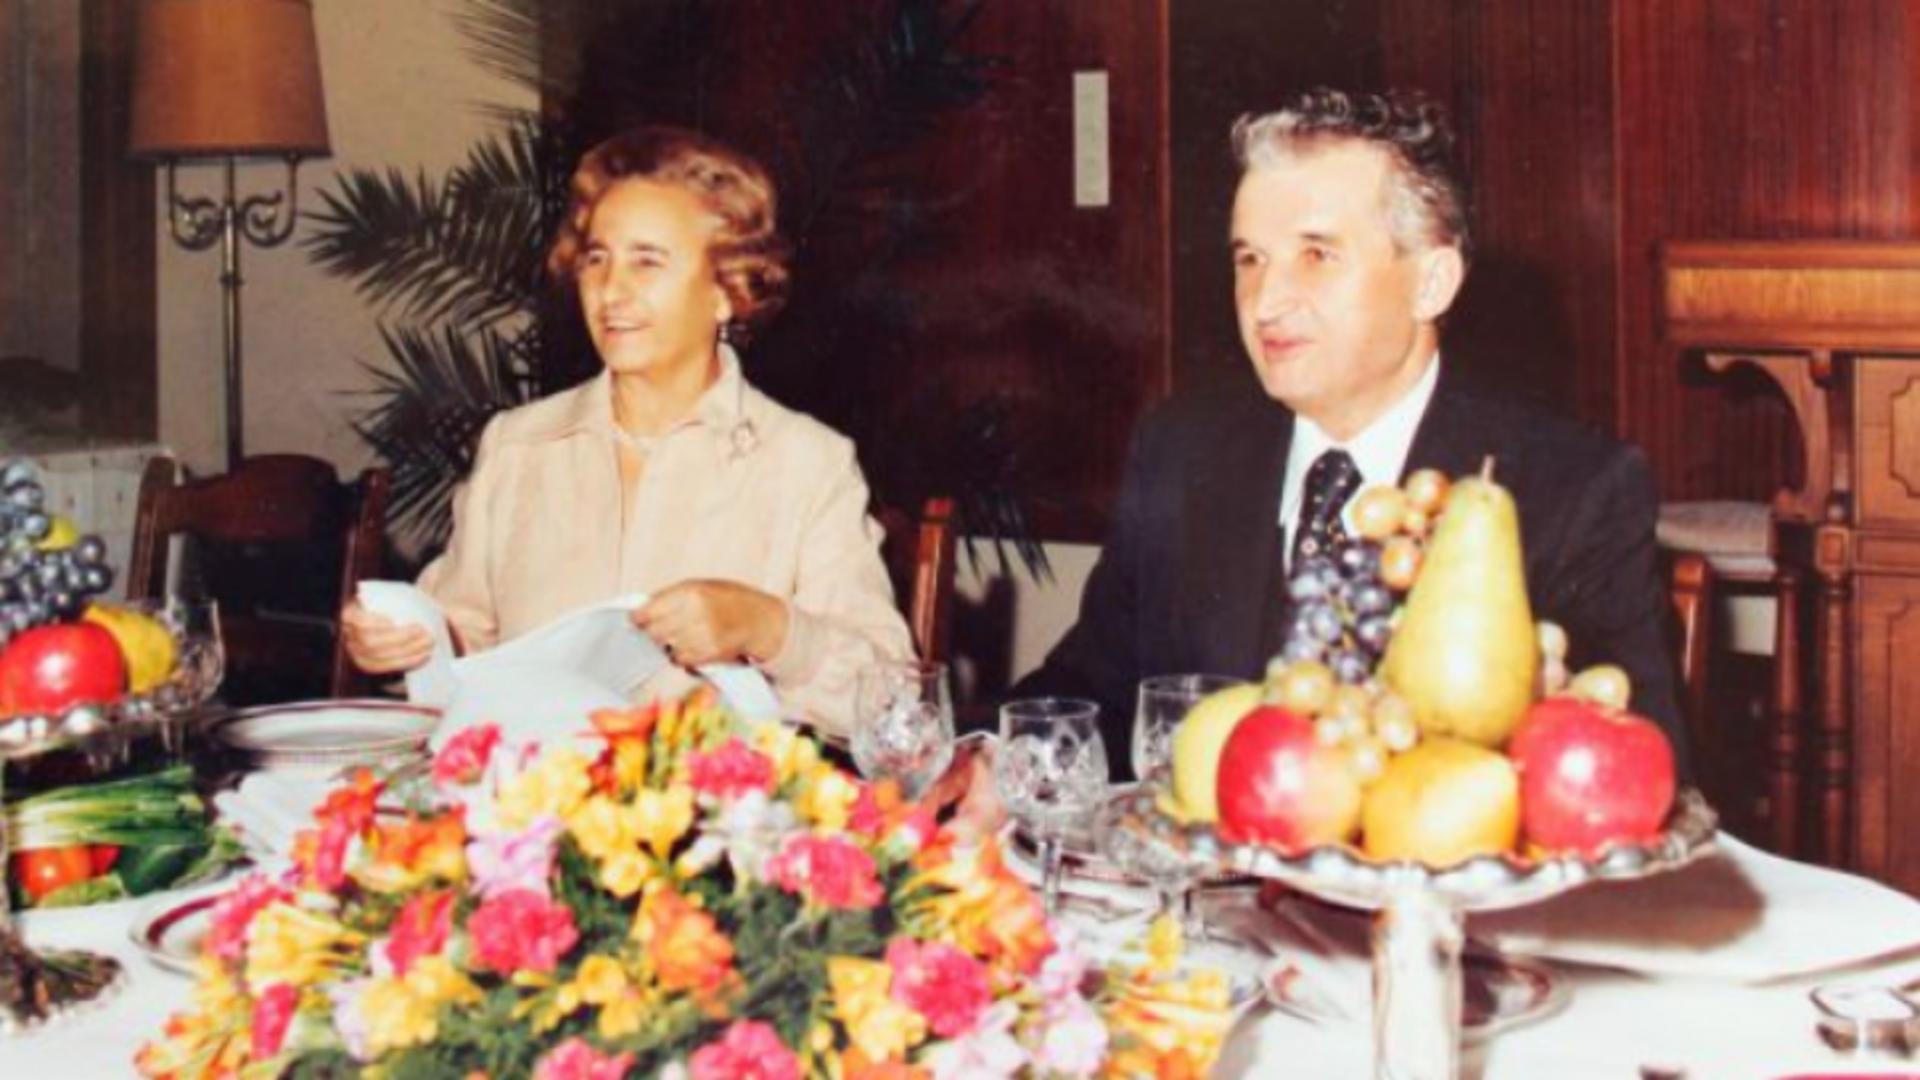 Ce fel de pâine nu-i lipsea lui Ceaușescu de pe masă și de unde era adusă special pentru el, cu avionul